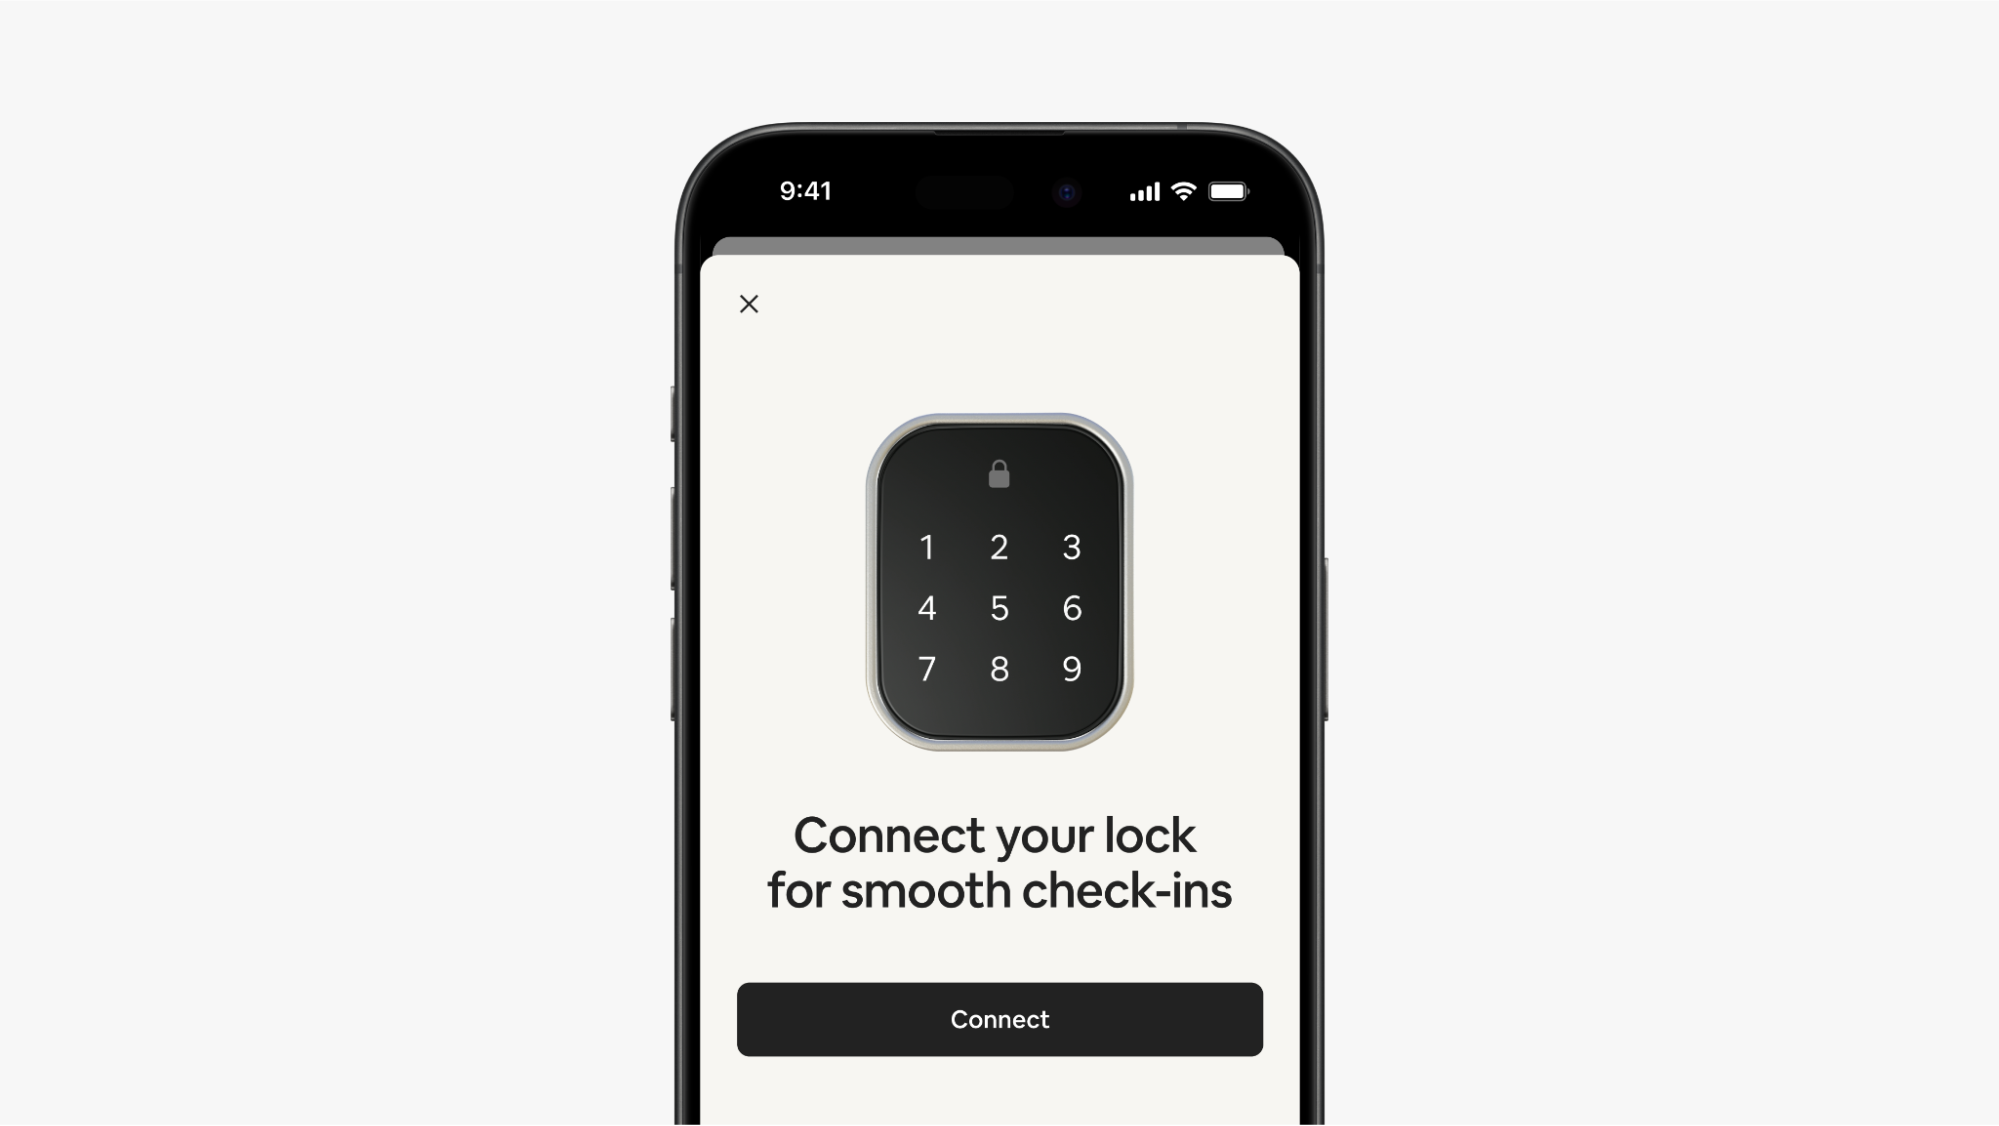 爱彼迎 App 的界面上显示着一个智能门锁的小键盘，「连接」按钮上方是数字 1 至 9。